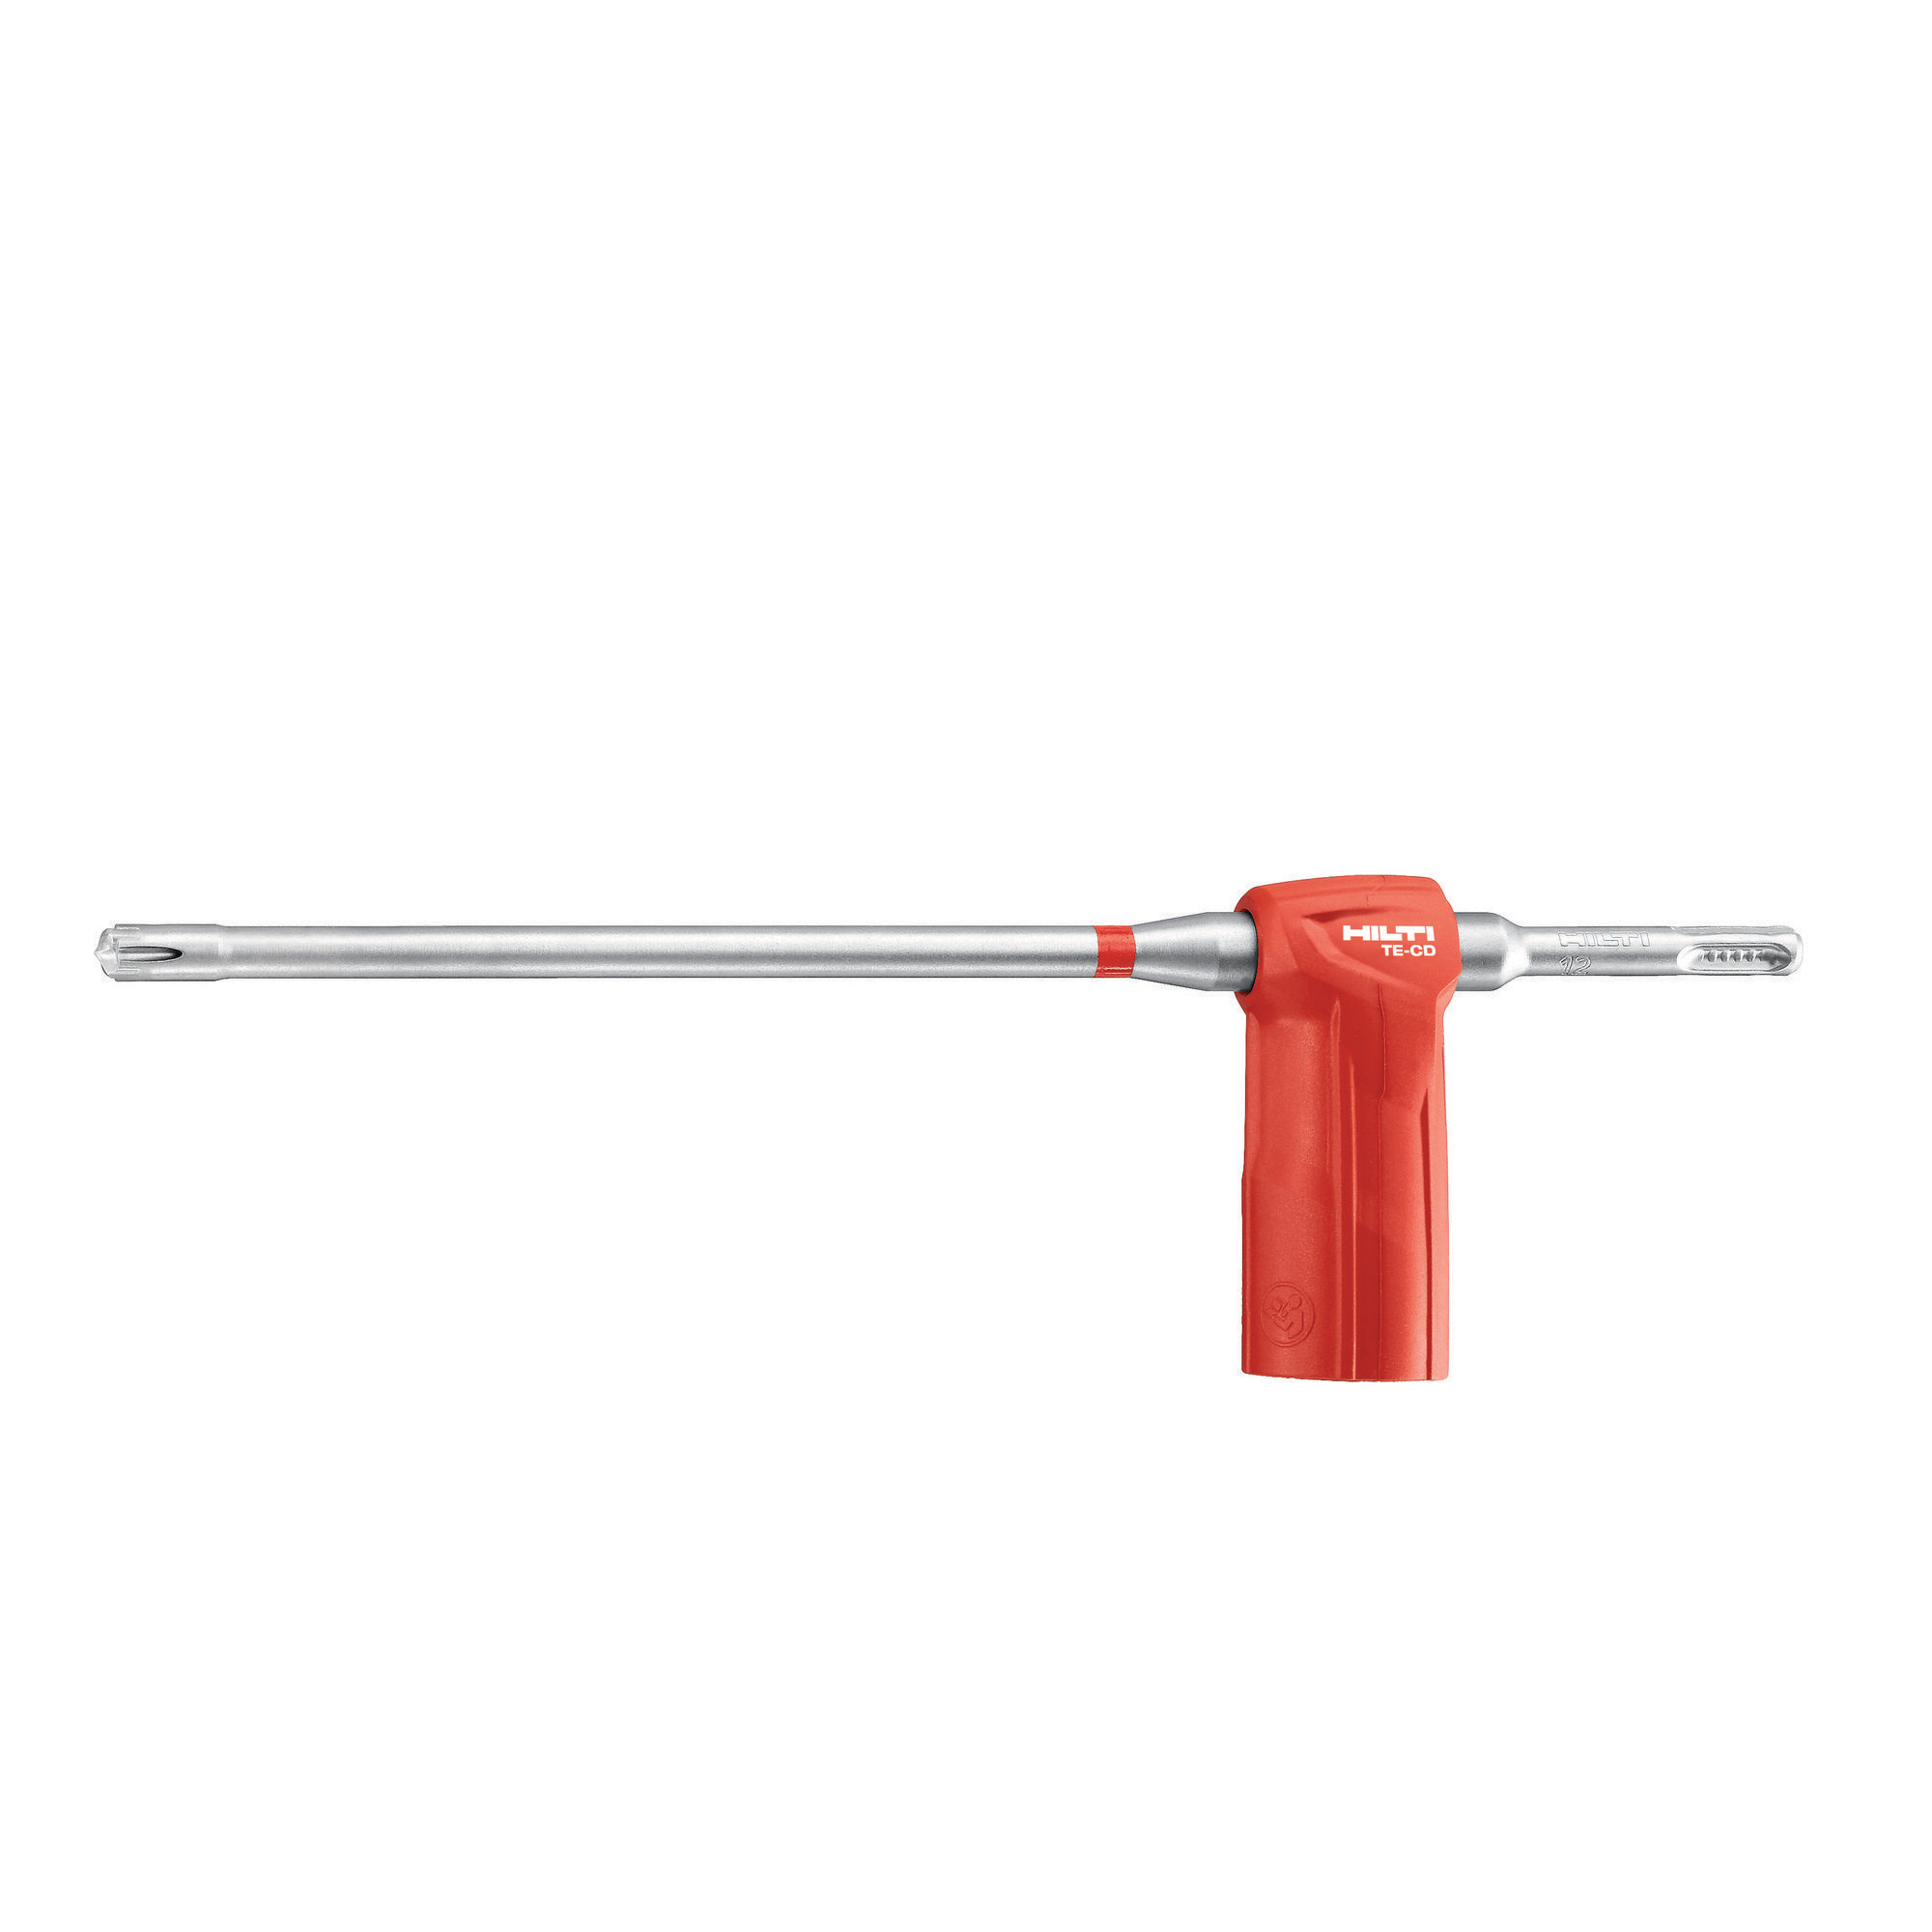 HILTI 435002 TE-CX X-Geometry Hammer Drill Bit, 1/4 in Drill Bit, 10 mm SDS-Plus® Shank, 9-1/2 in D Cutting, Solid Carbide Cutting Edge, 12 in OAL